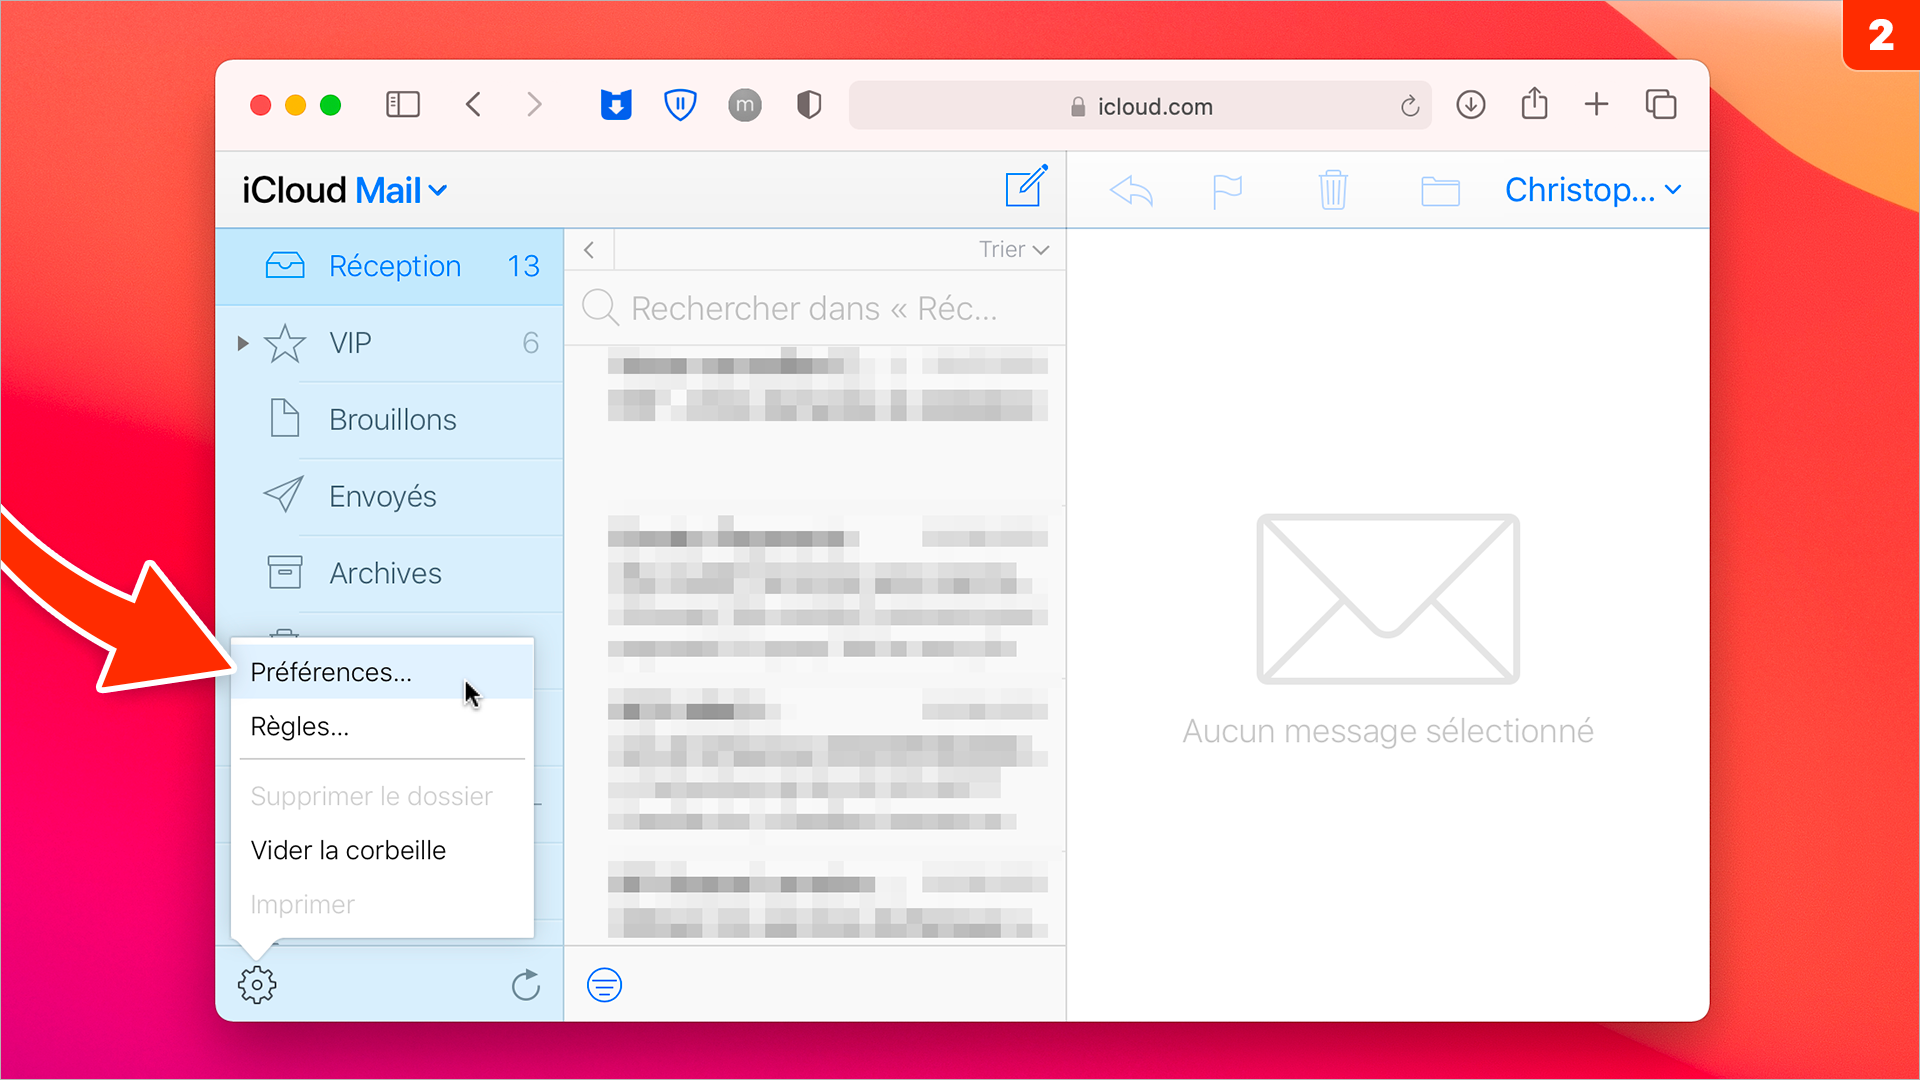 iCloud • Créez un message d’absence dans Mail pendant vos vacances